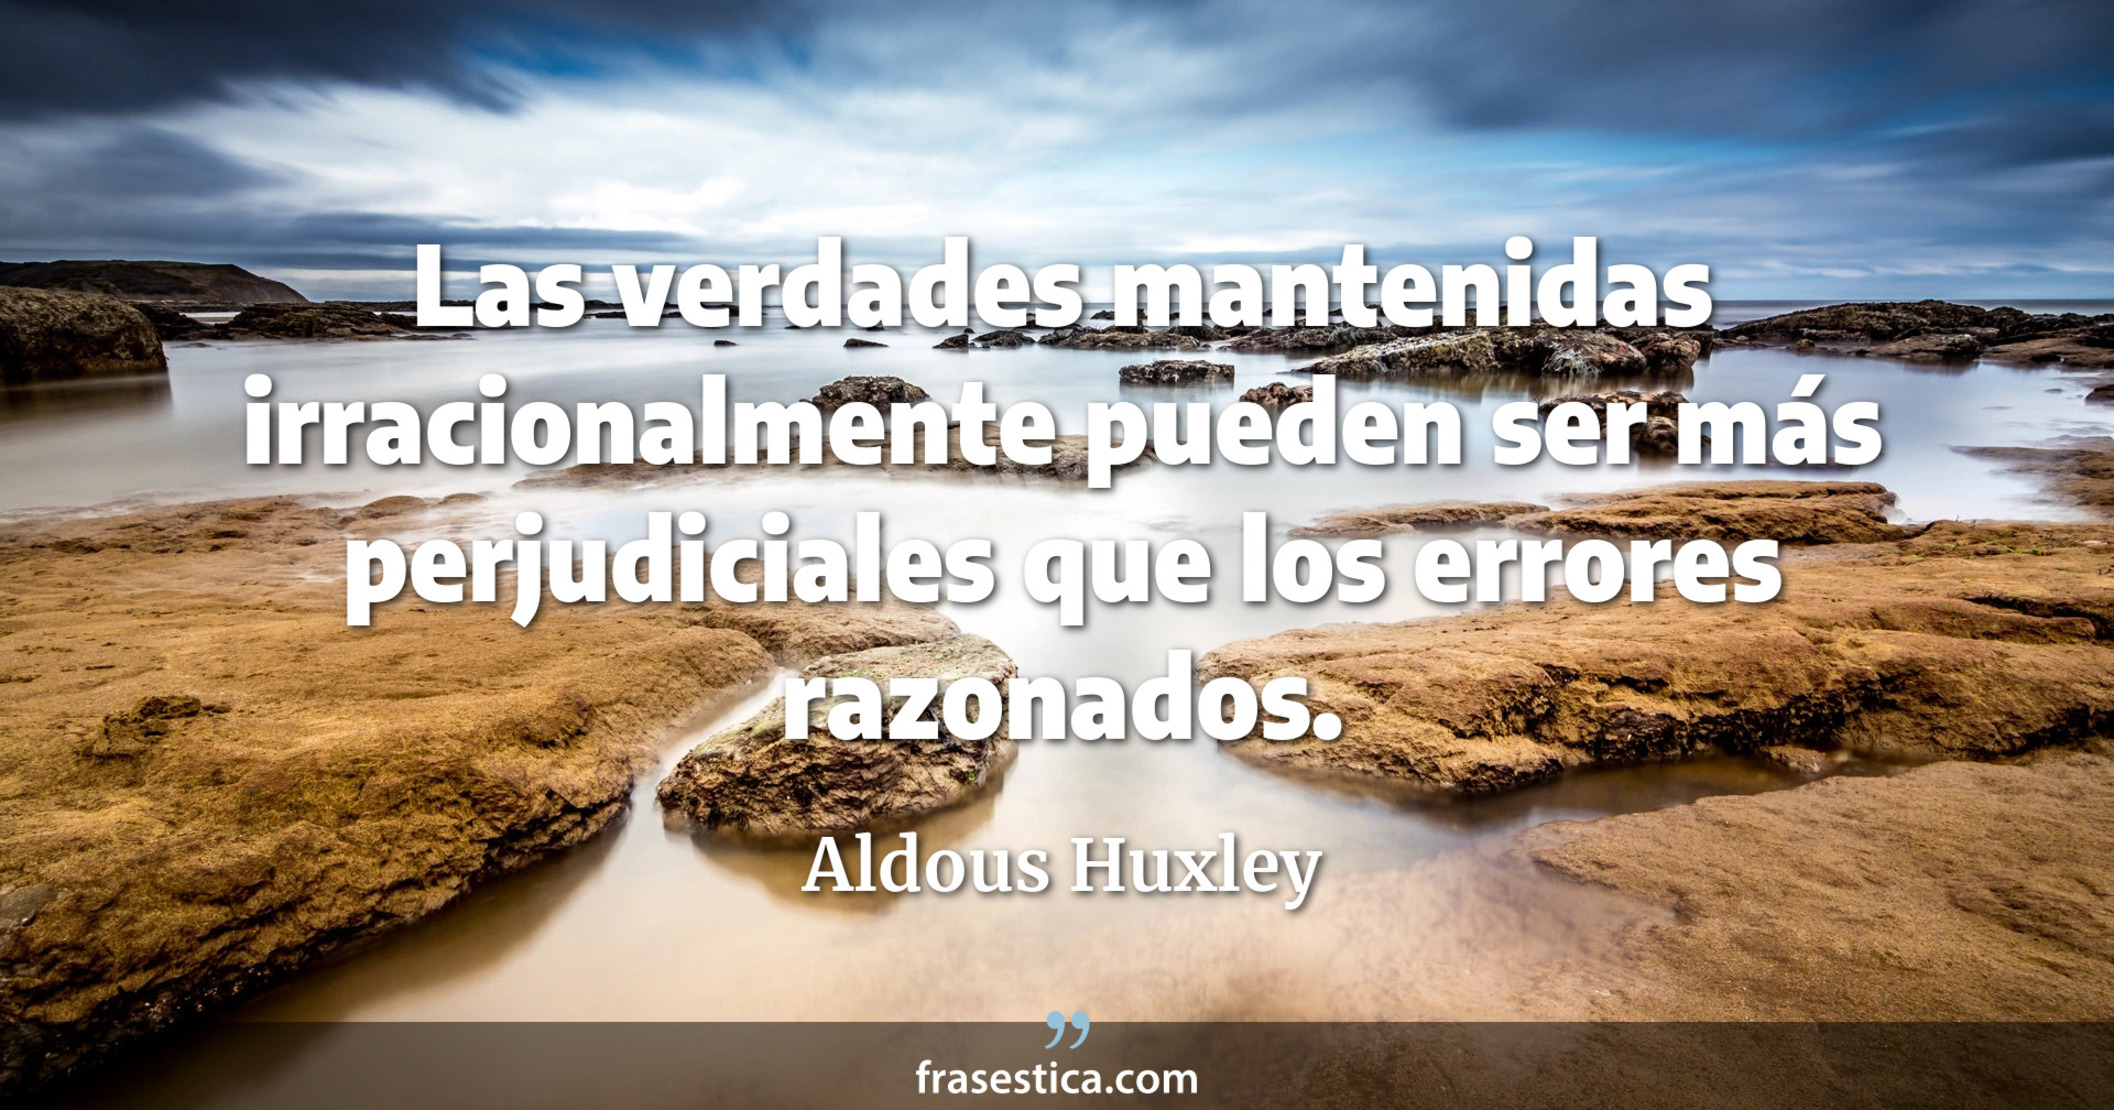 Las verdades mantenidas irracionalmente pueden ser más perjudiciales que los errores razonados. - Aldous Huxley